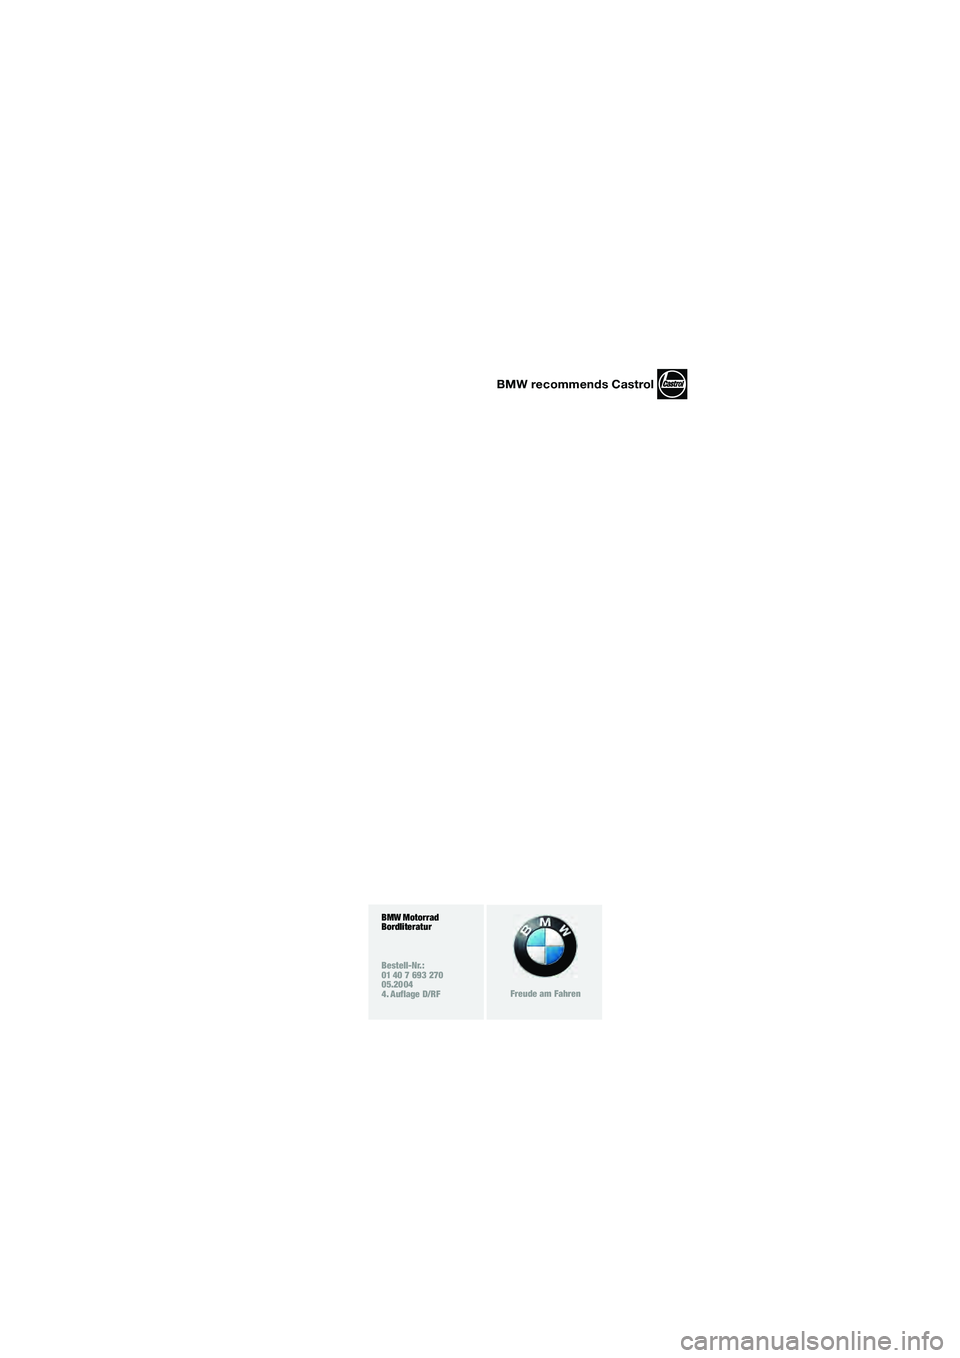 BMW MOTORRAD R 1150 R 2004  Betriebsanleitung (in German) BMW Motorrad
Bordliteratur
Bestell-Nr.:
01 40 7 693 270
05.2004
4. Auflage D/RF
Freude am Fahren
BMW recommends Castrol
10r28bkd3.book  Seite 92  Dienstag, 25. Mai 2004  4:42 16 